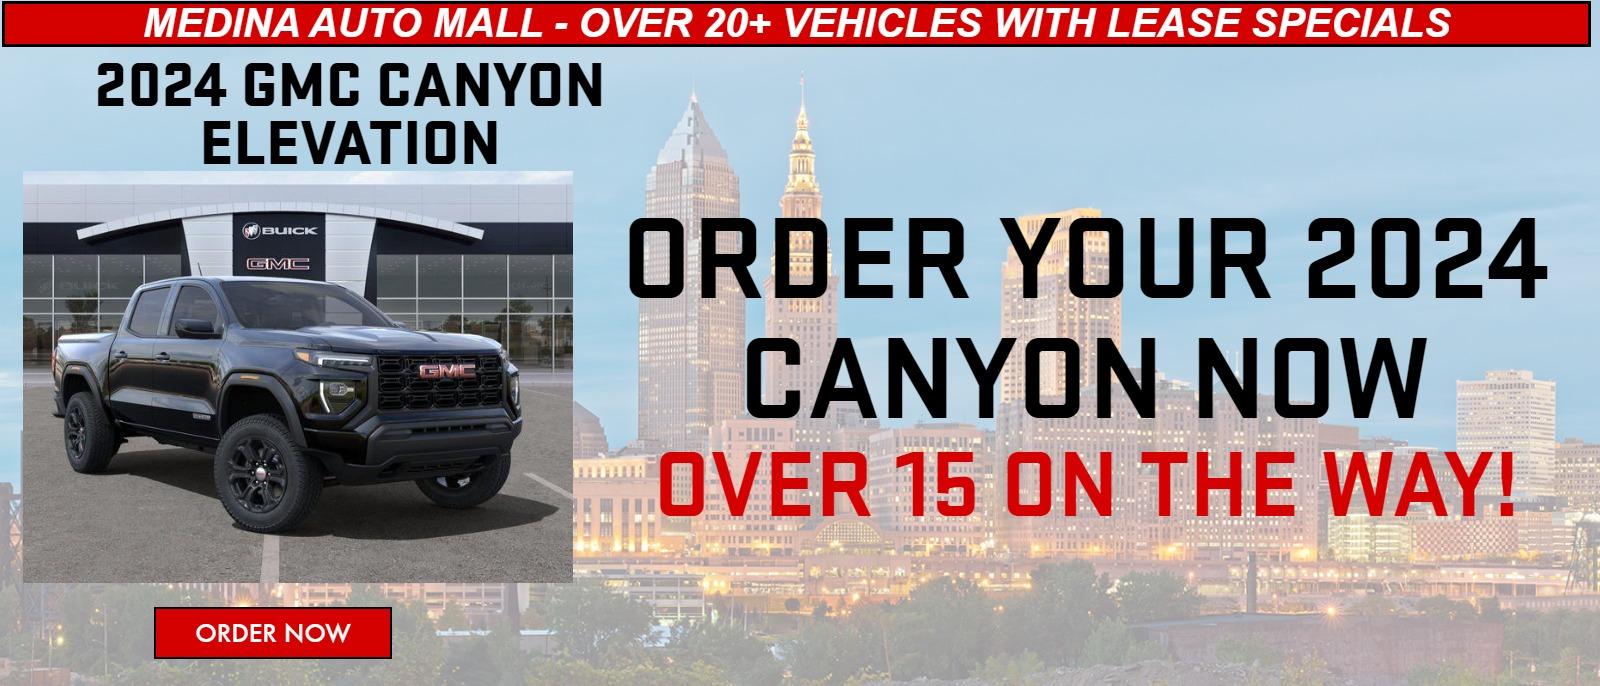 2024 GMC Canyon Lease Specials for Cleveland & Medina Medina Auto Mall